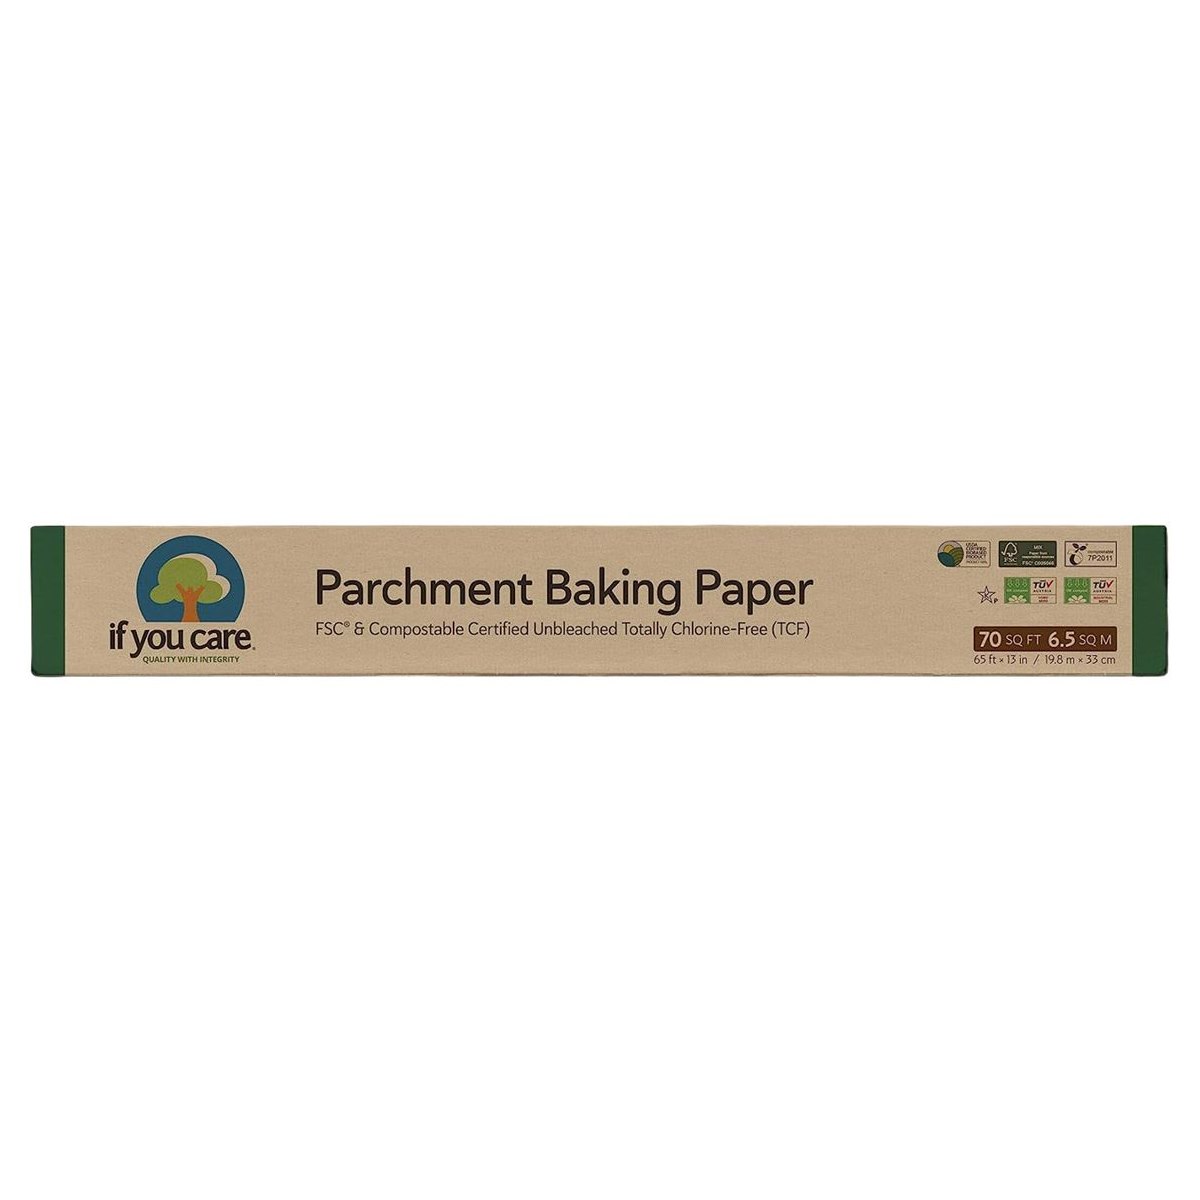 If You Care Parchment Baking Paper 6.5 Sq M 19.8 m x 33 cm